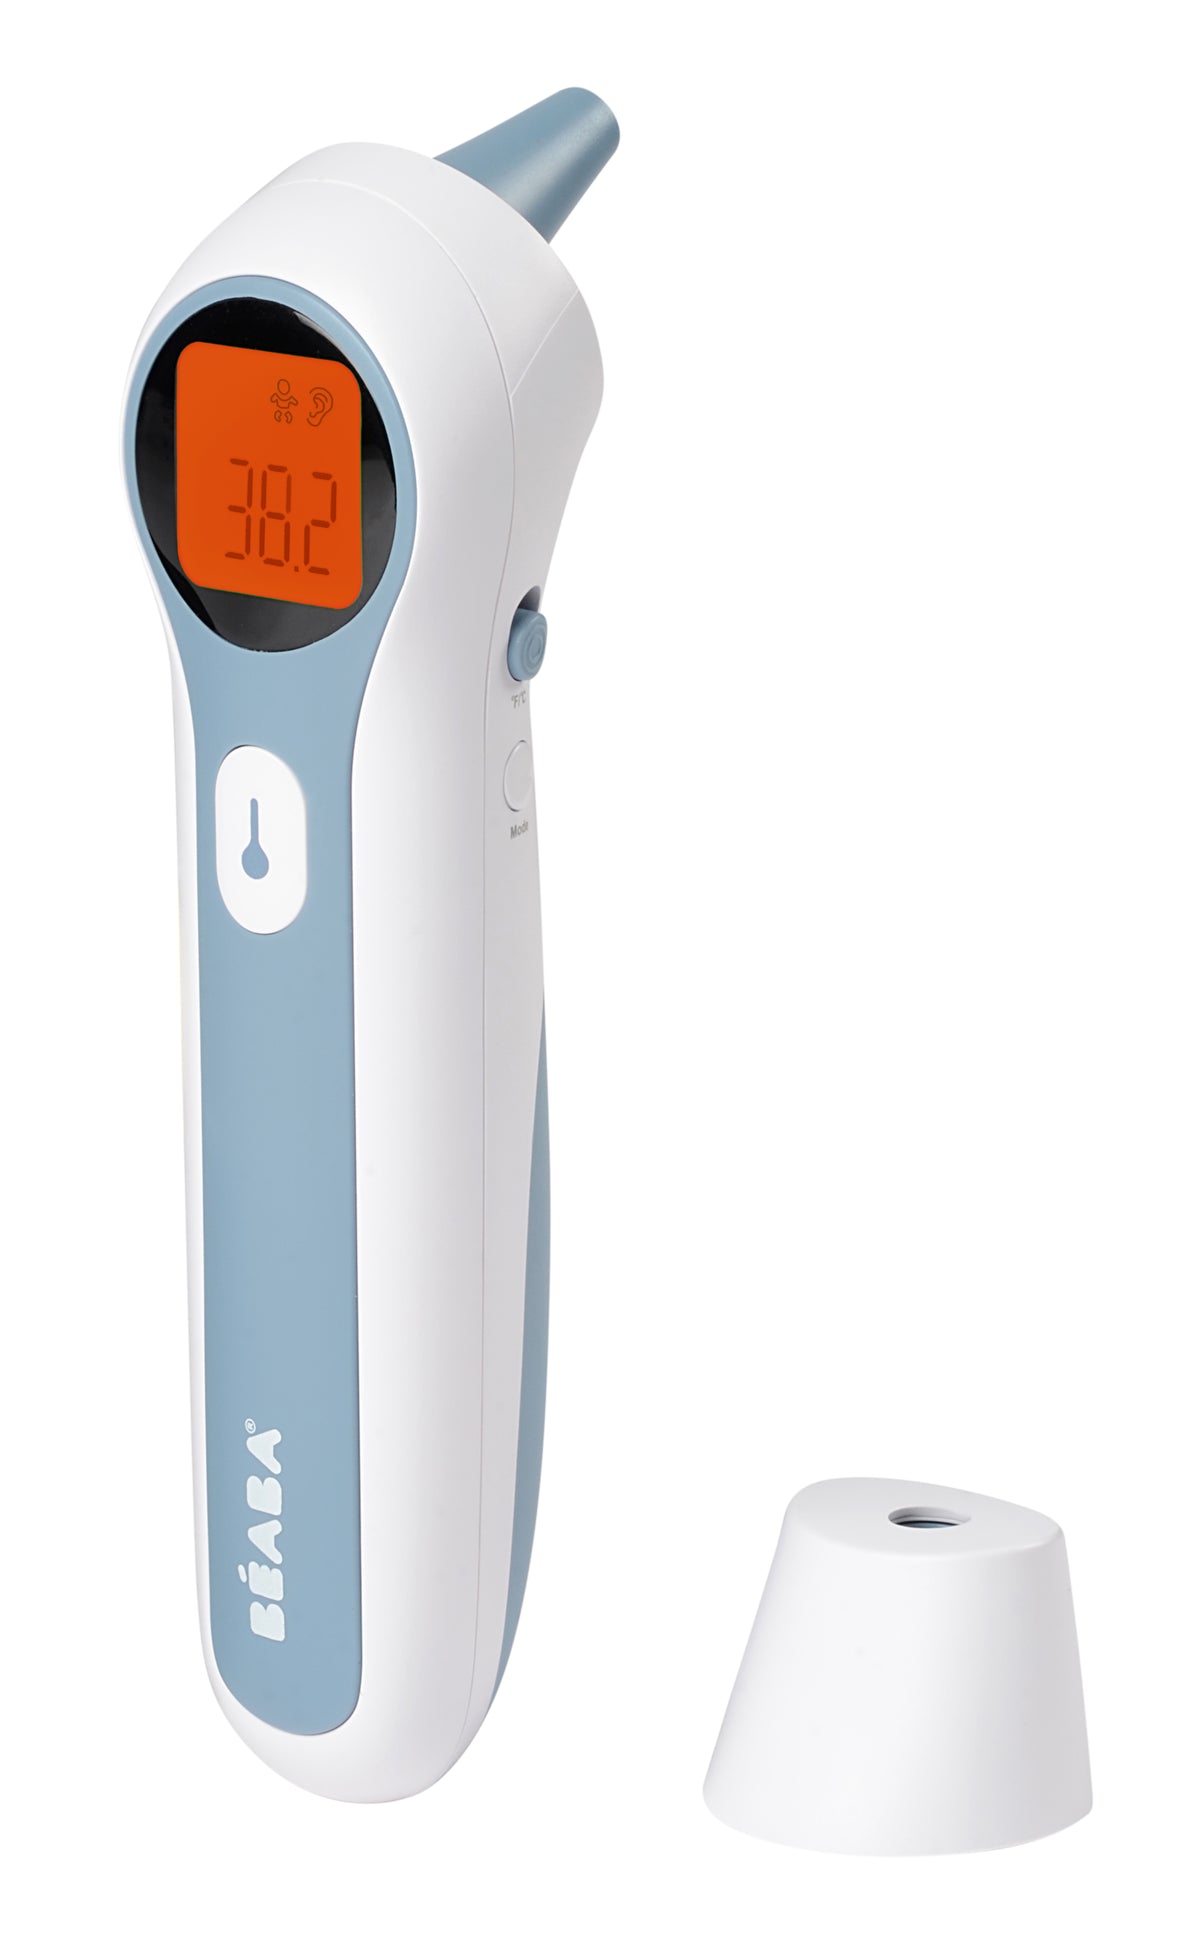 Beaba Thermospeed Infrarot-Thermometer für Ohr und Stirn